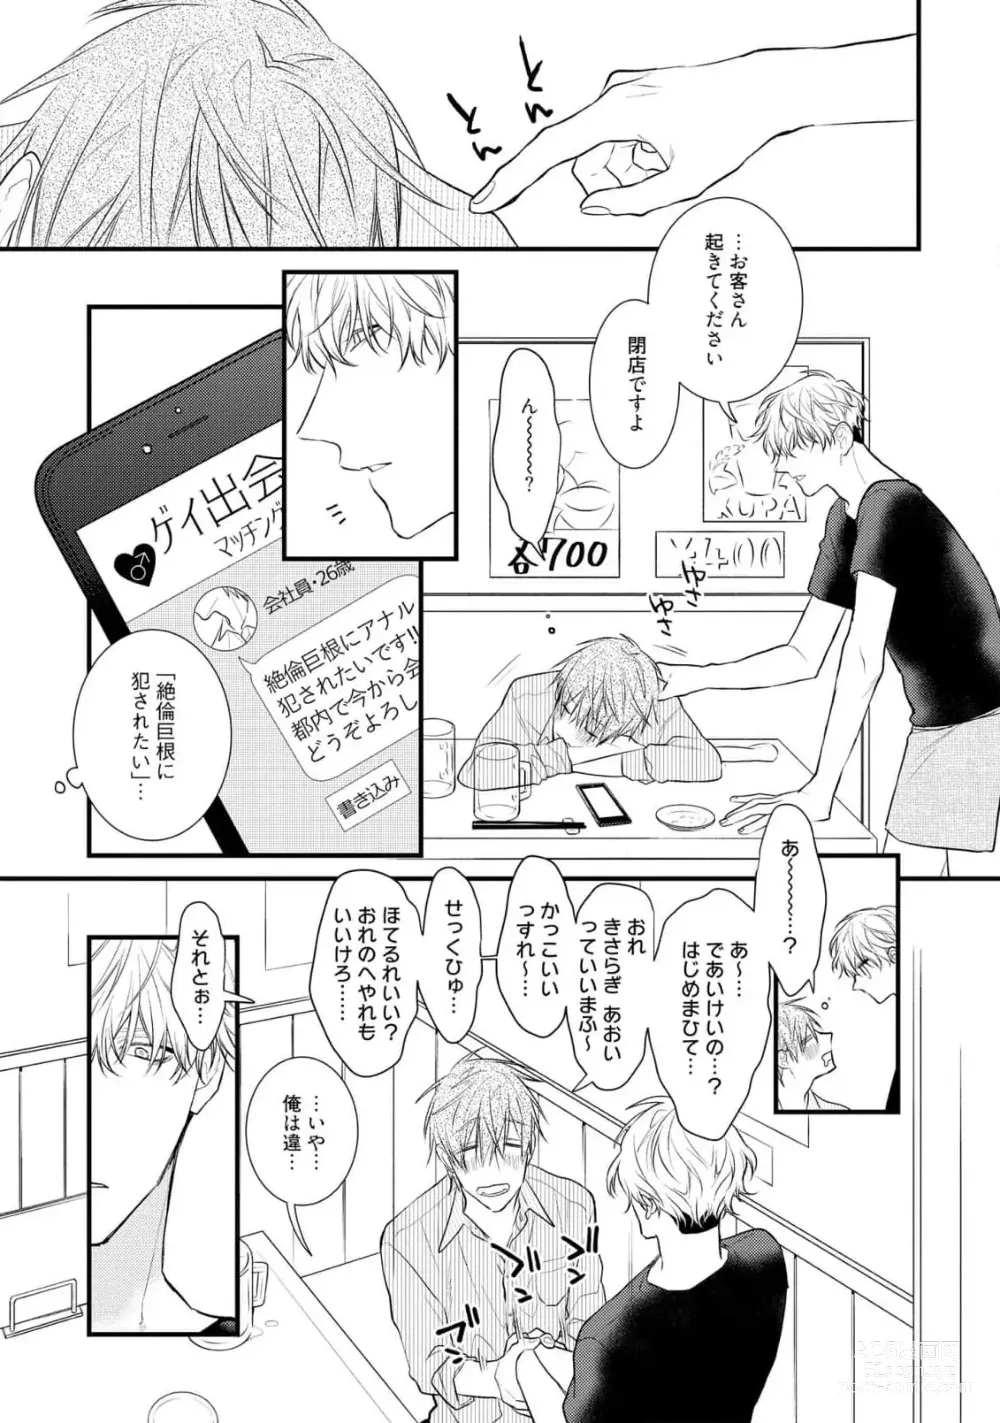 Page 11 of manga Ecchi wa shuu 7 Kibou Desu!